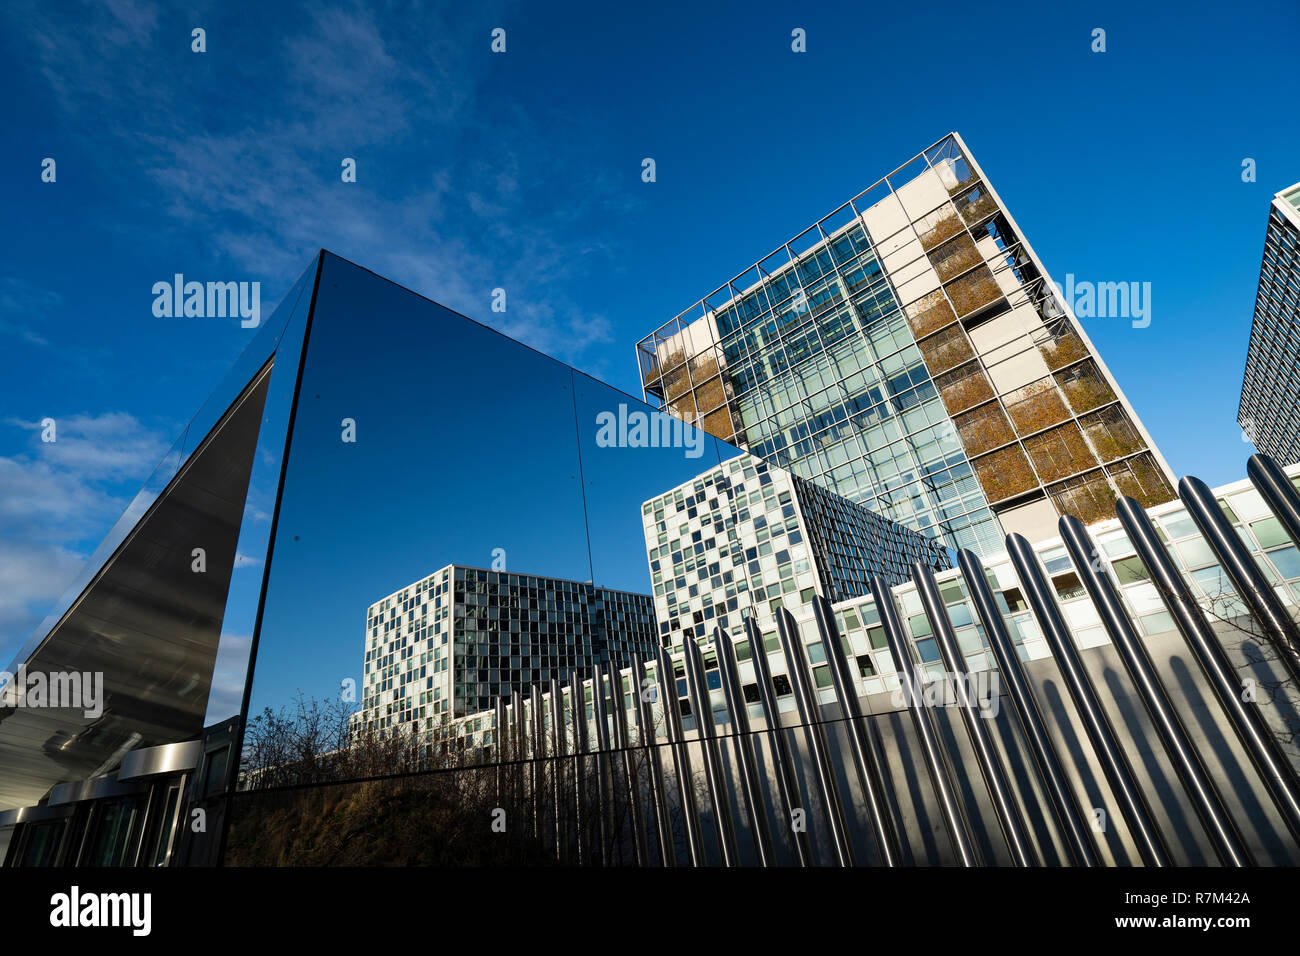 Der neue Hauptsitz des Internationalen Strafgerichtshofs, ICC, in Den Haag, Niederlande Stockfoto